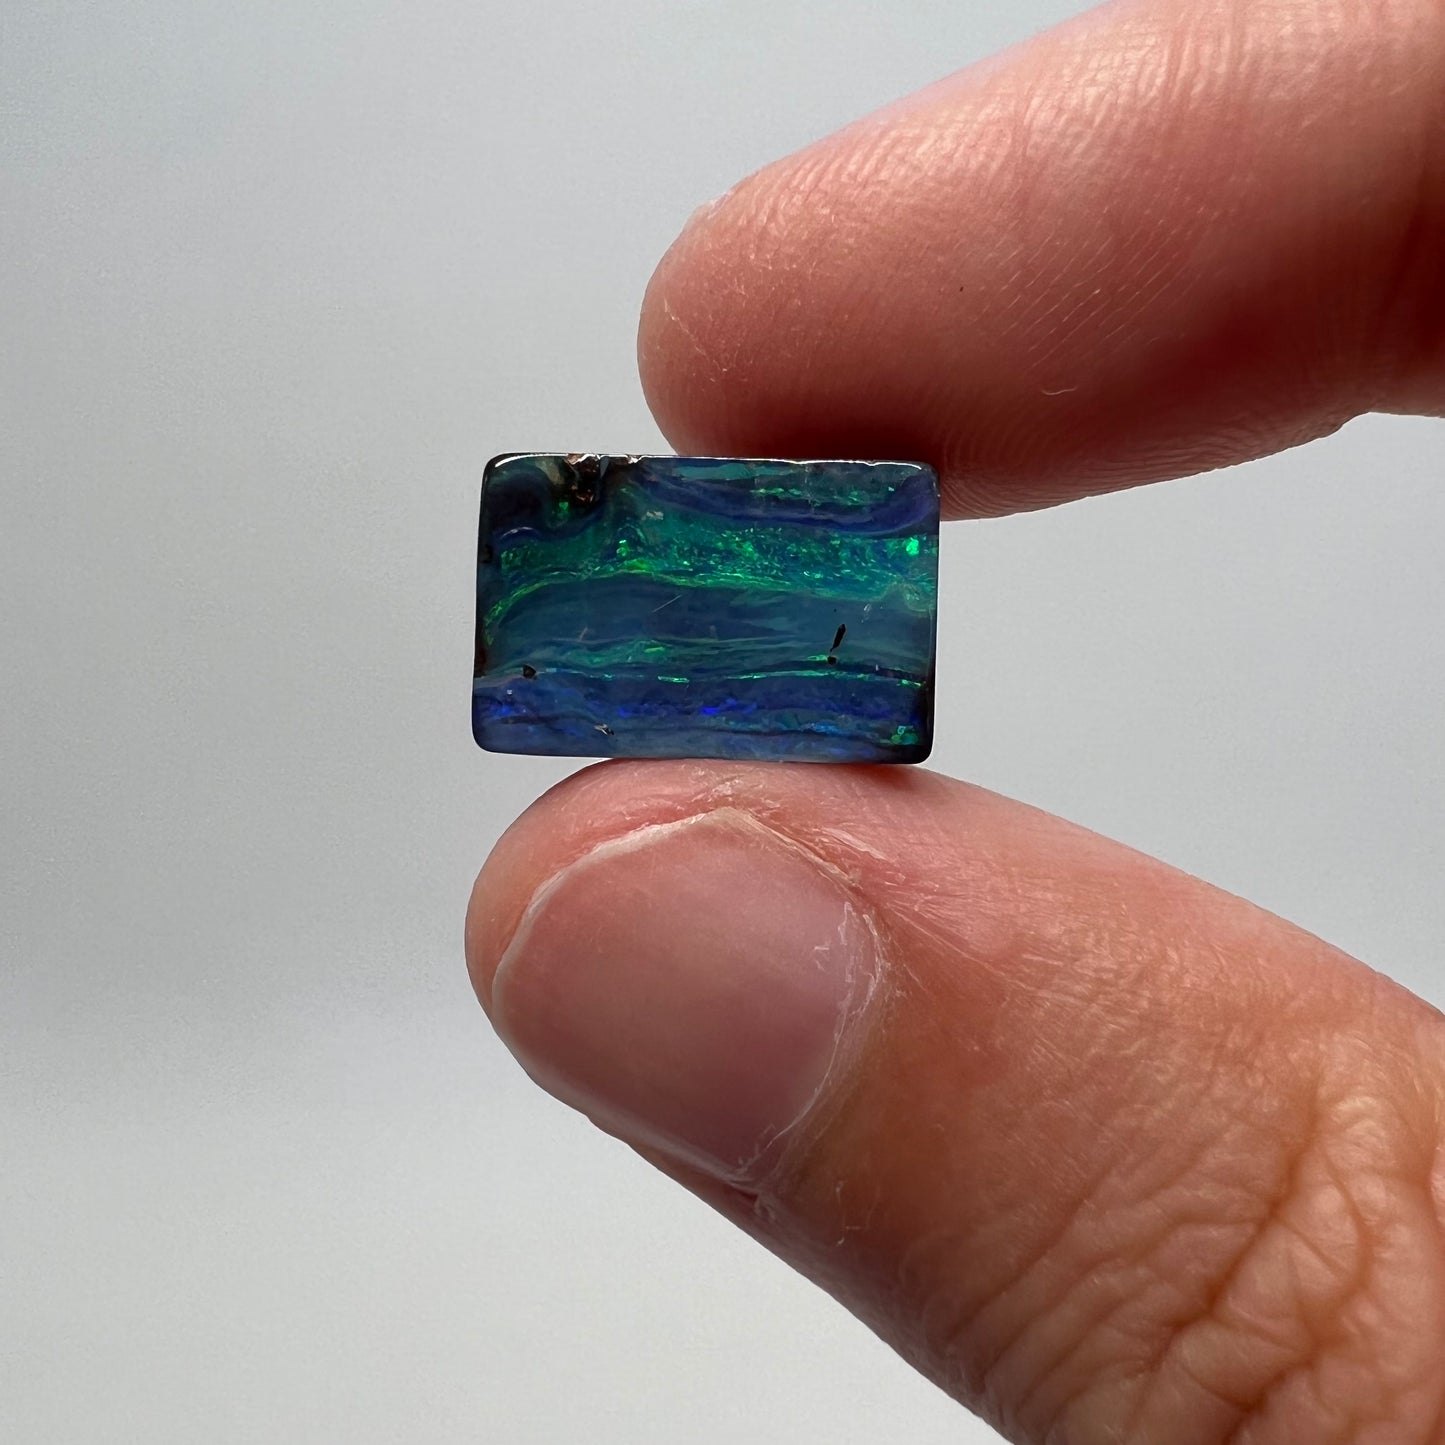 6.01 Ct green-blue boulder opal